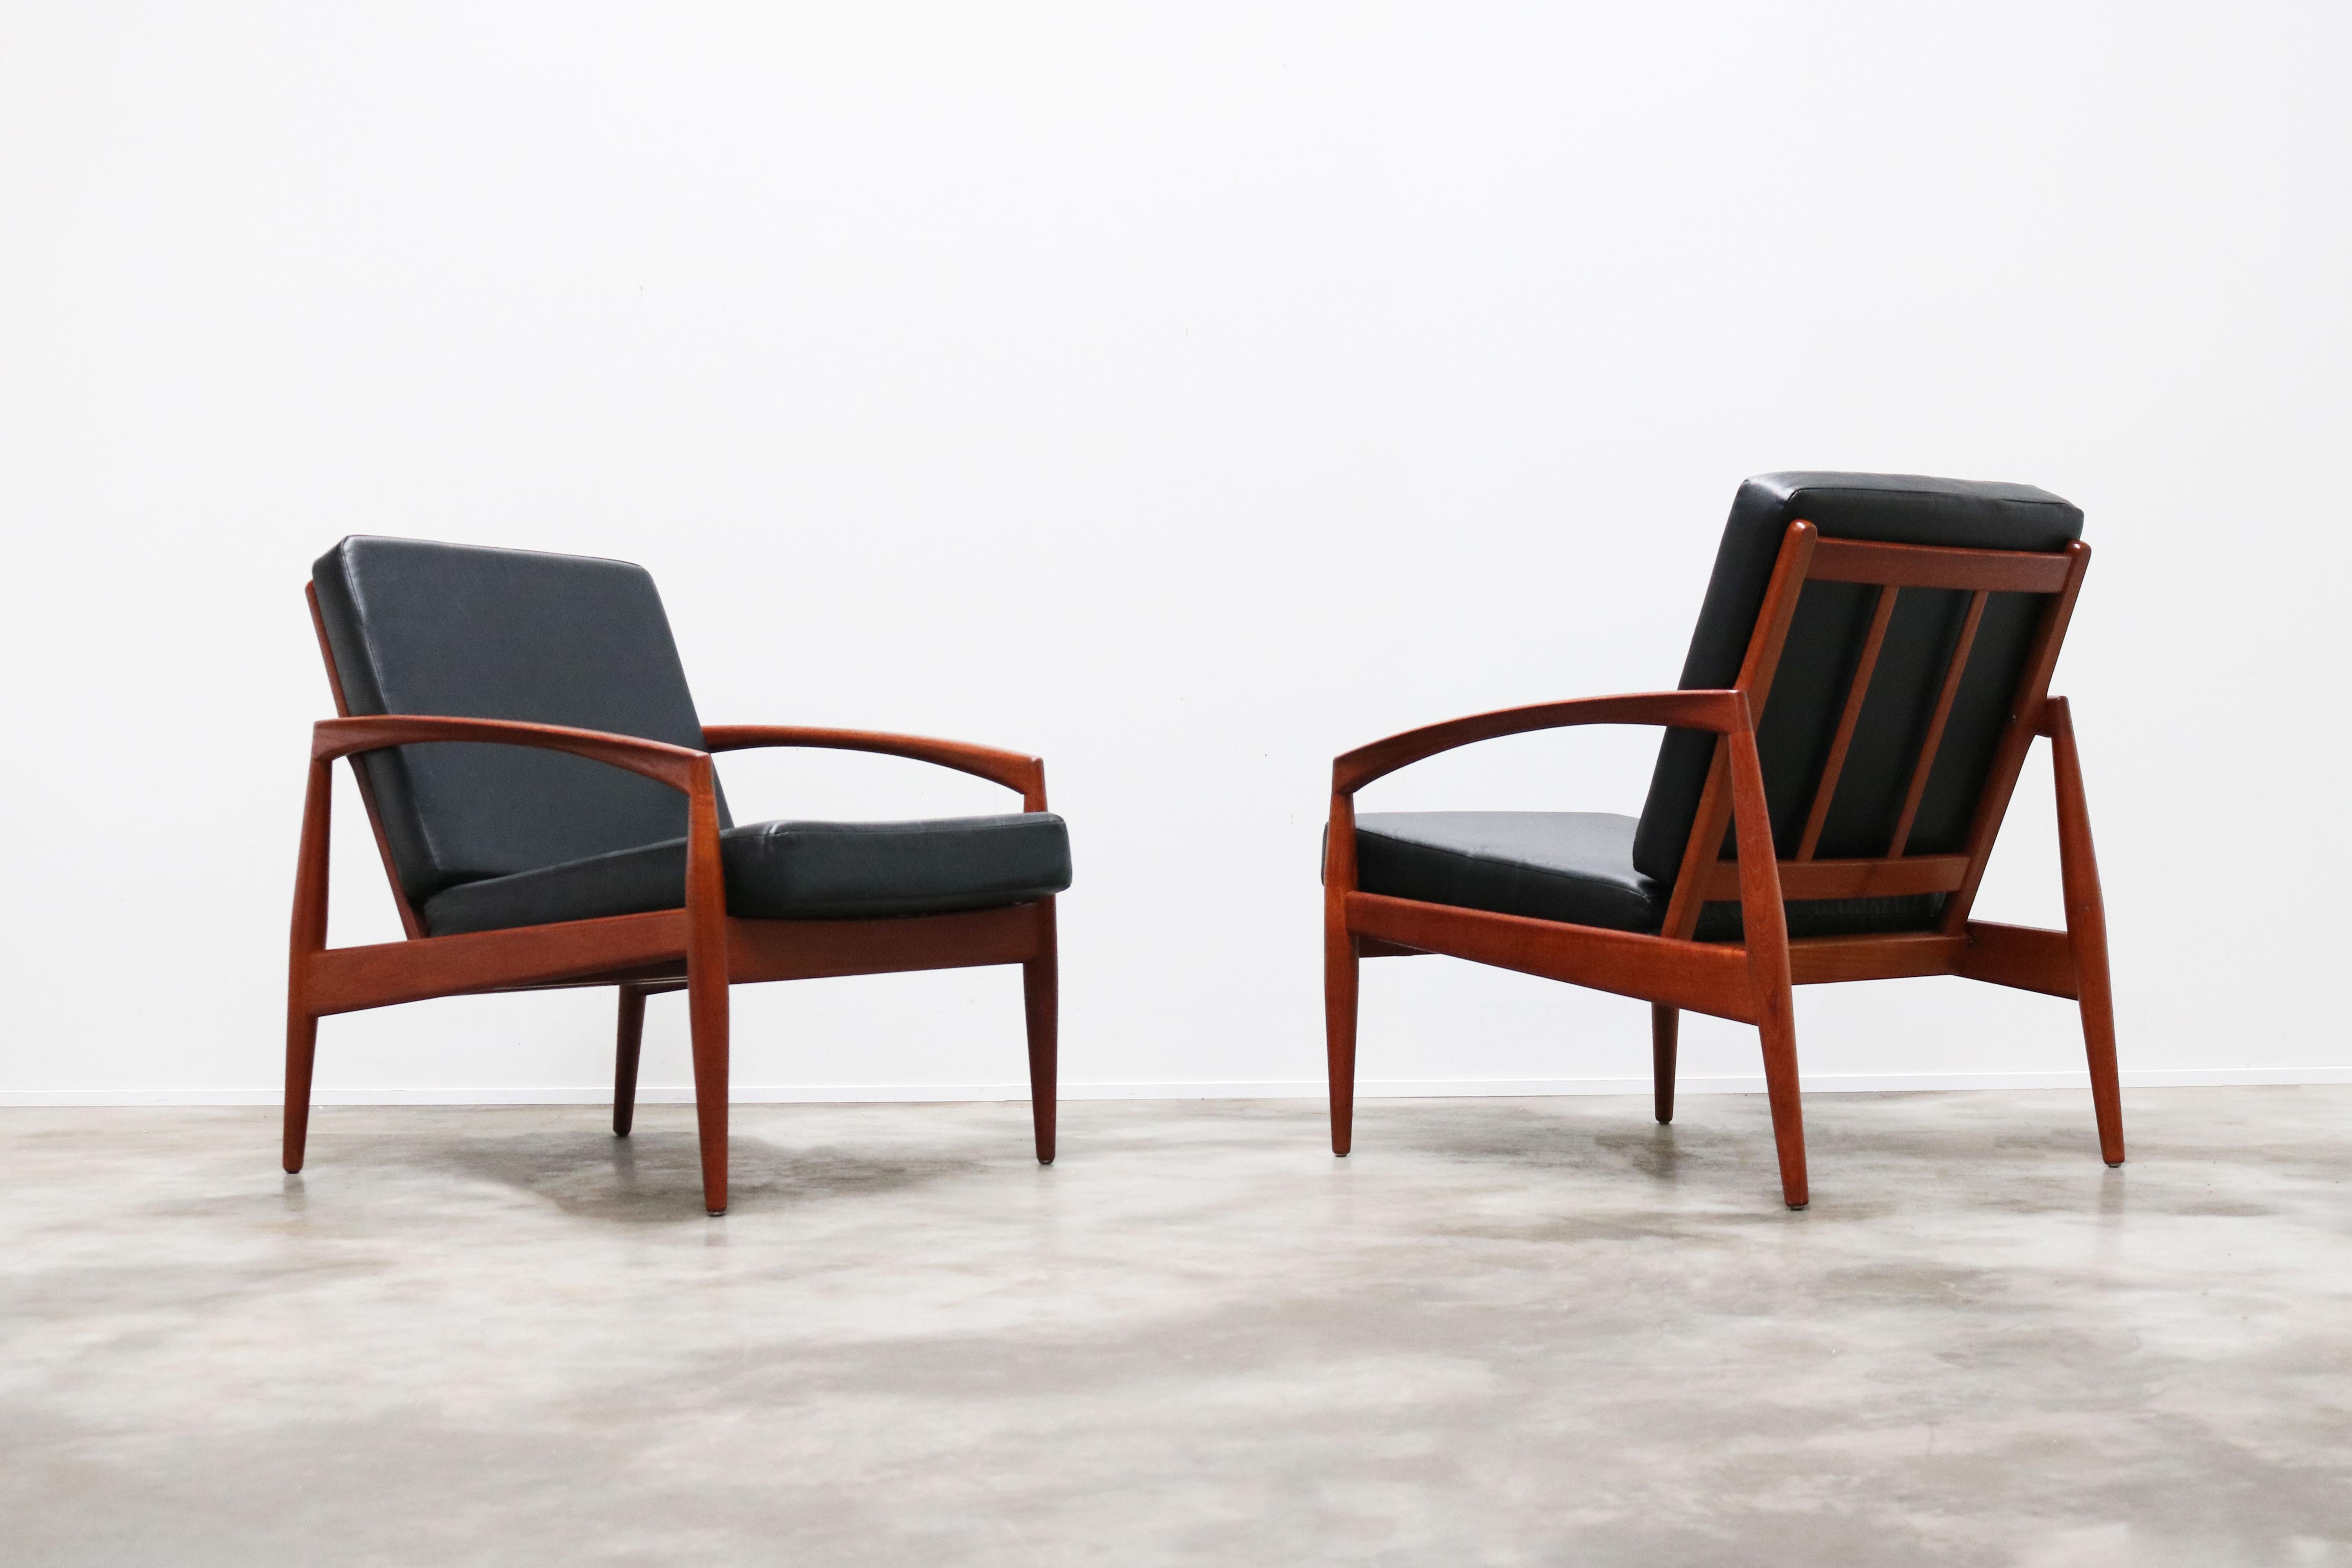 Rare paire de chaises longues 'Paper Knife' modèle 121 en teck et cuir noir (faux) designées par Kai Kristiansen pour Magnus Olesen en 1955. 
Magnifique style de design organique sculpté dans du teck massif.
Des chaises très confortables et de